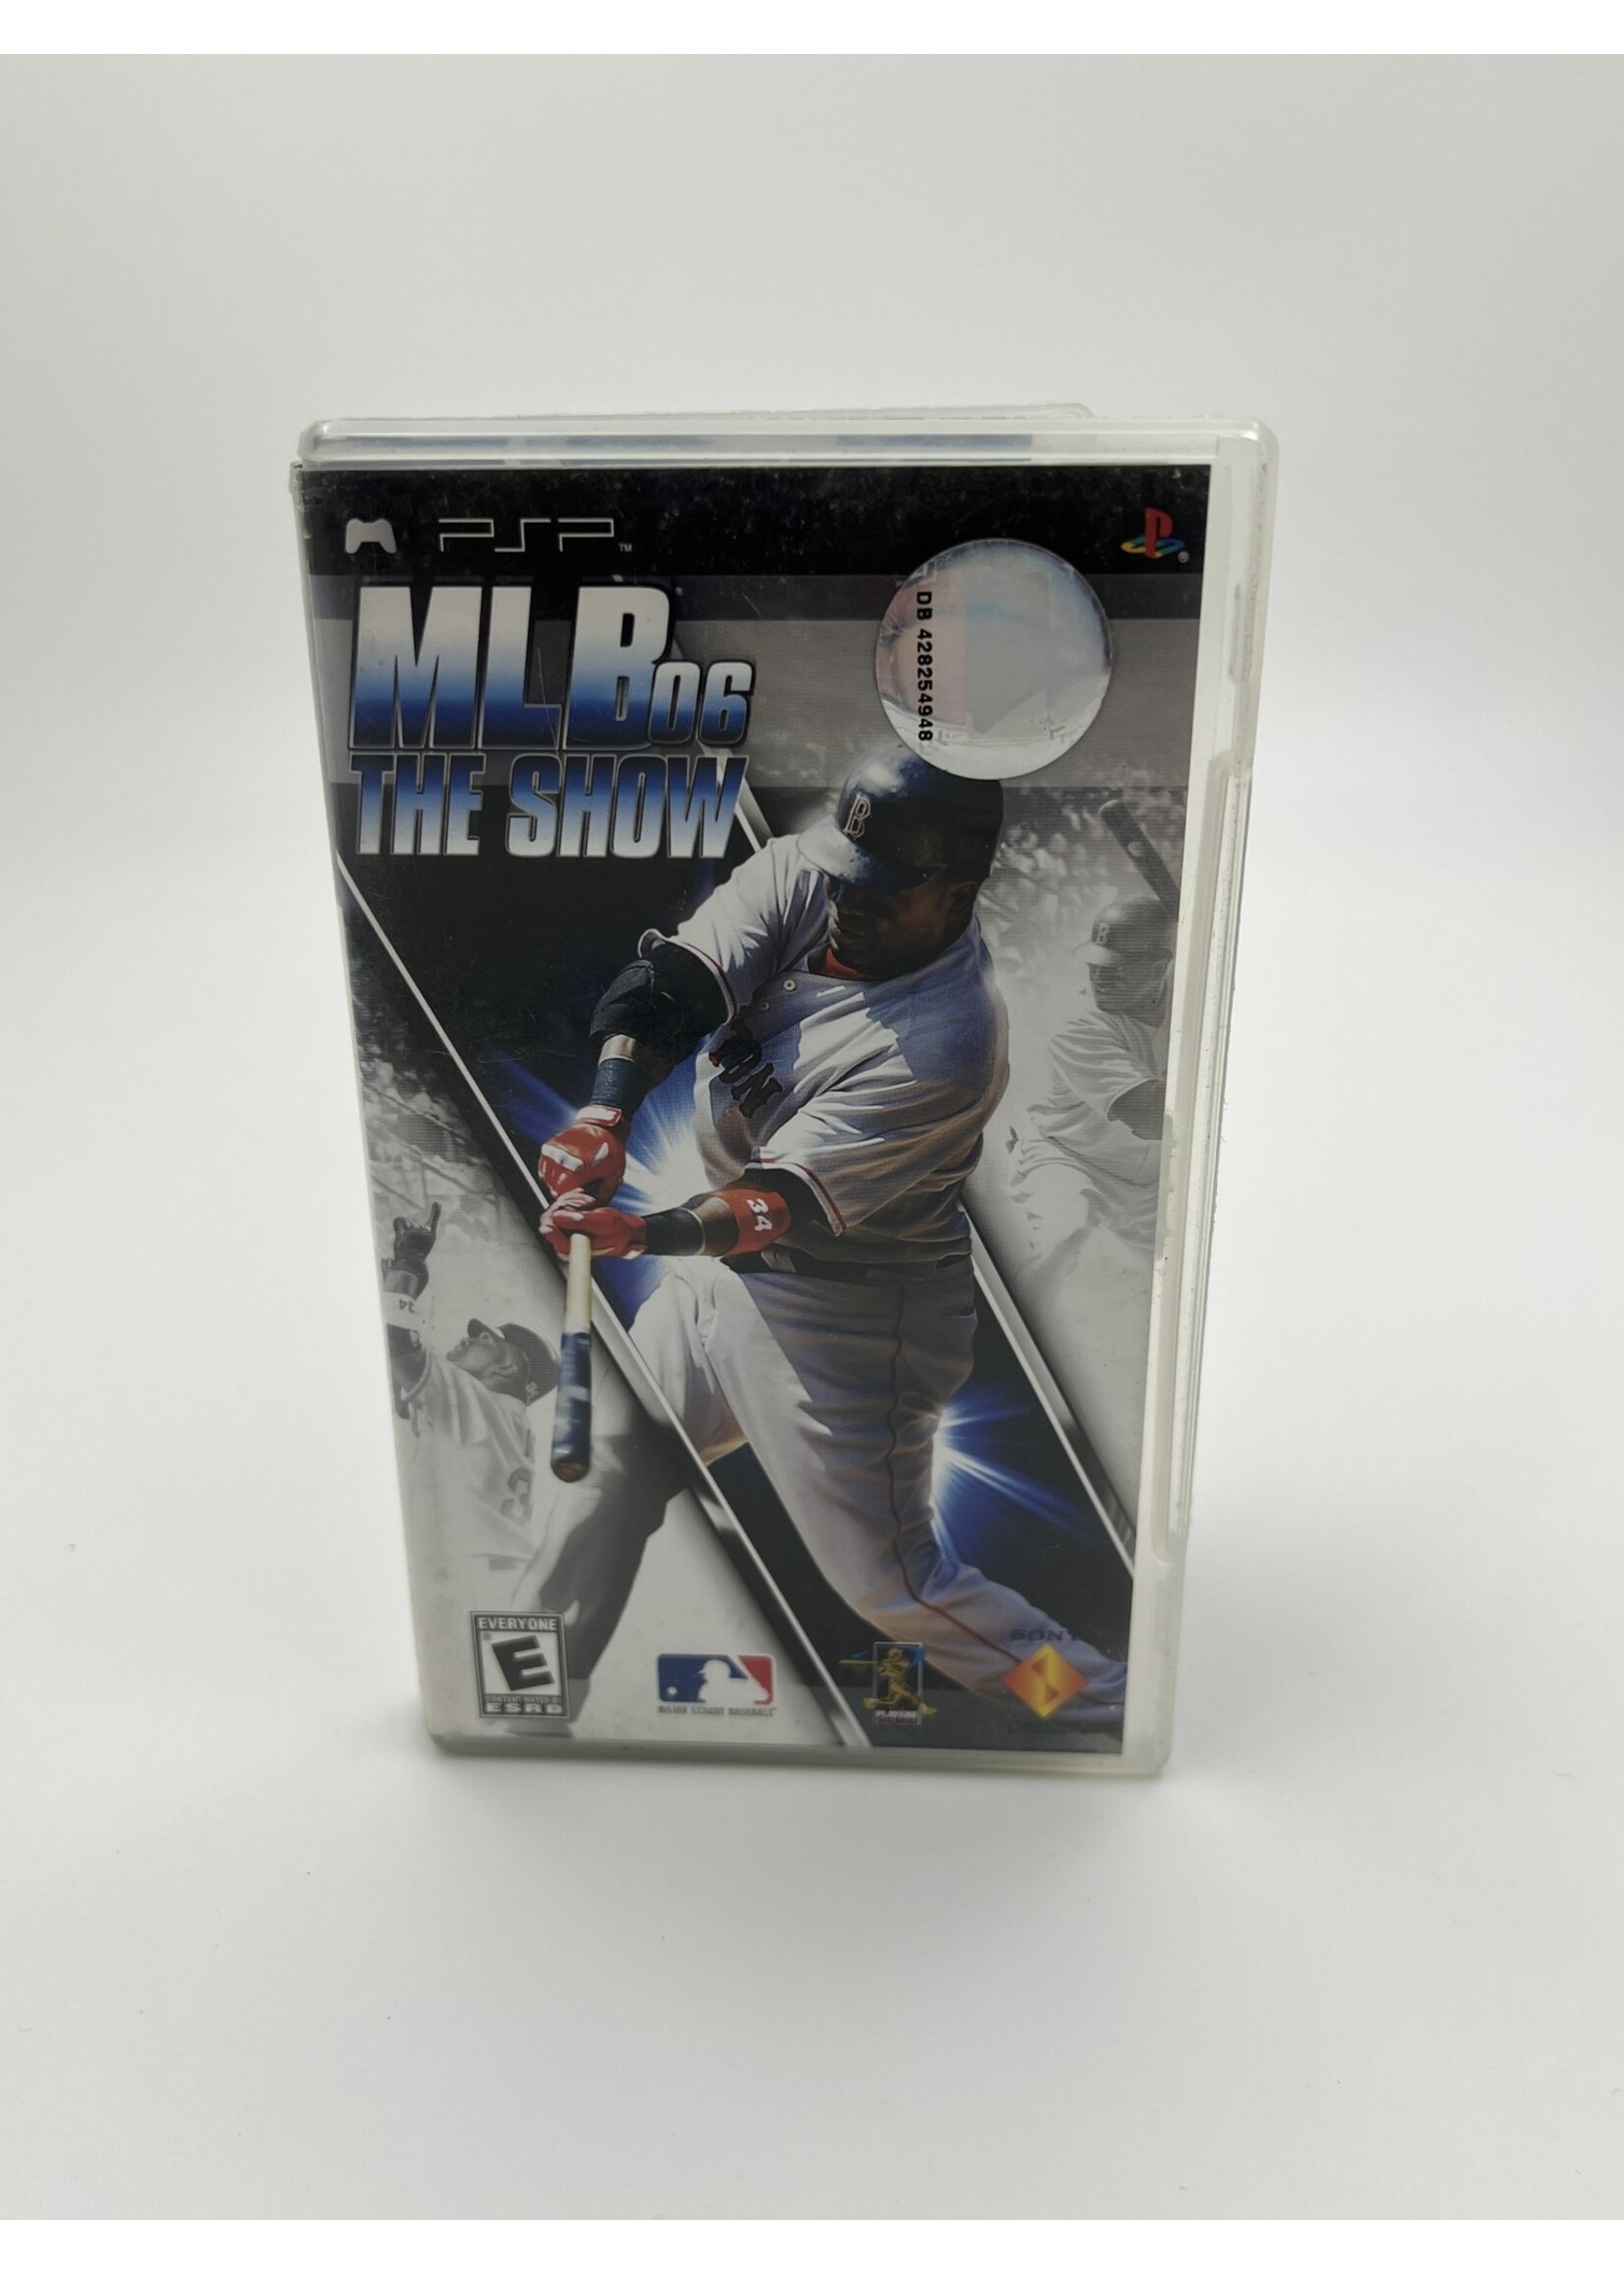 Sony MLB 06 The Show PSP